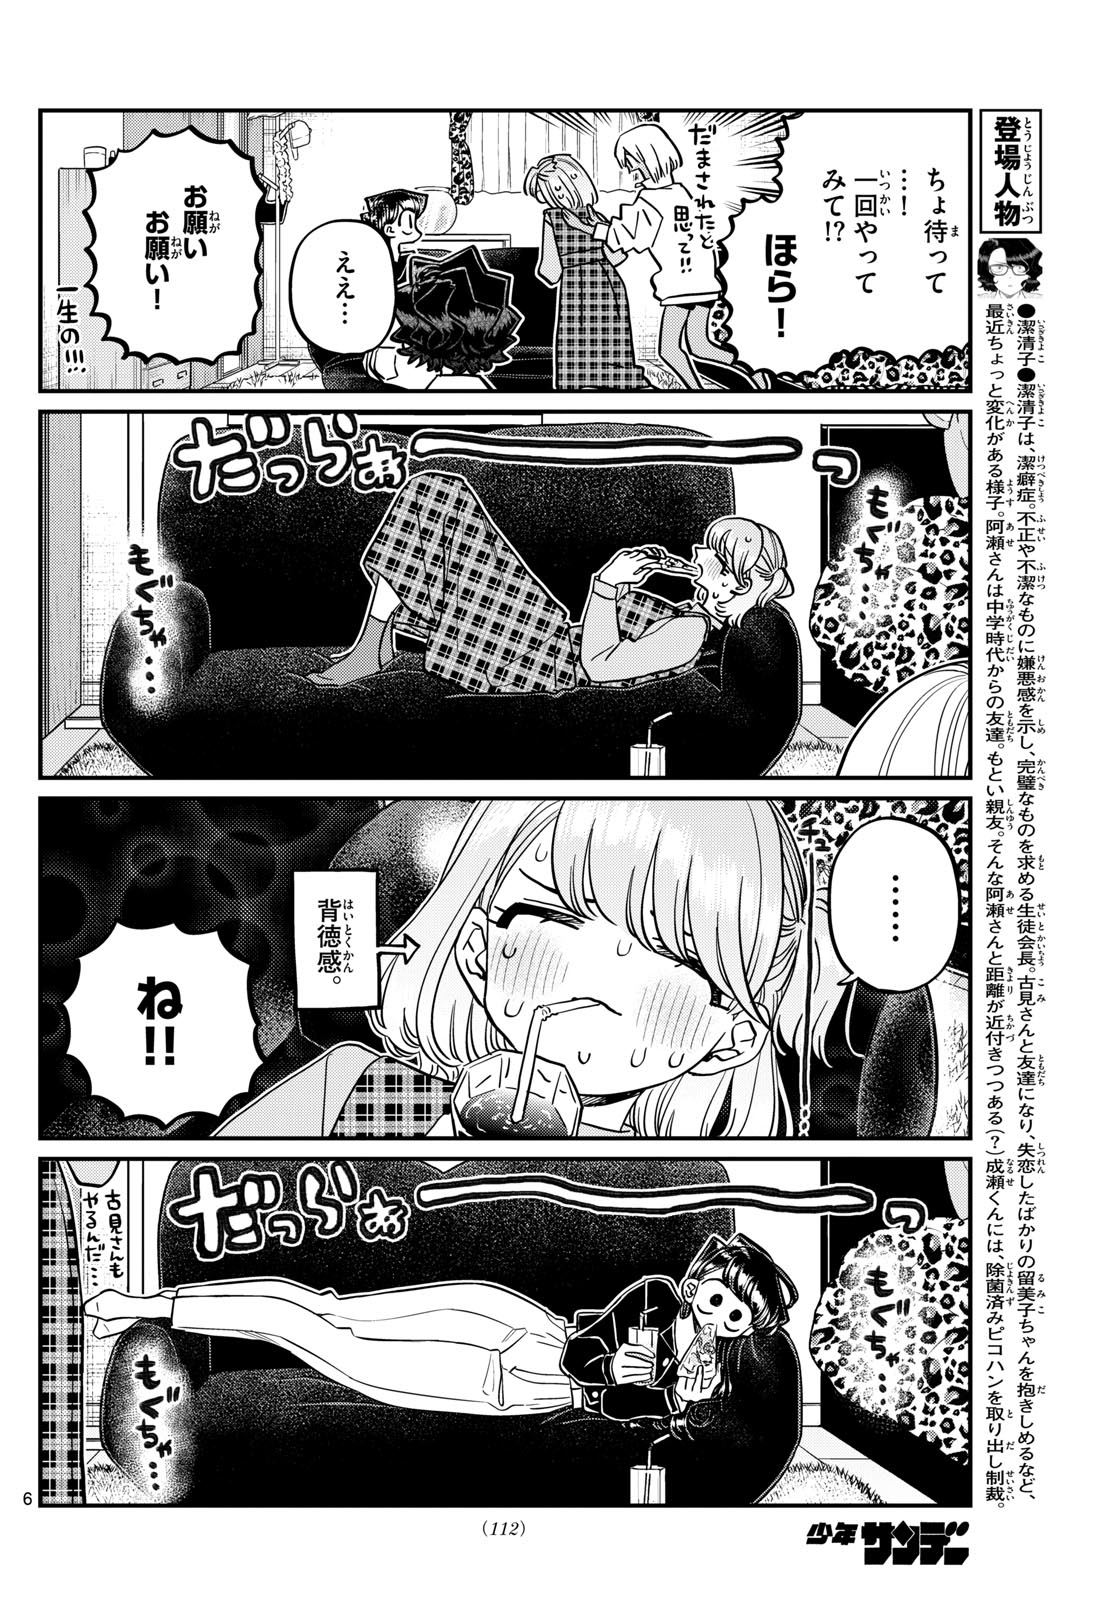 Komi-san wa Komyushou Desu - Chapter 442 - Page 6